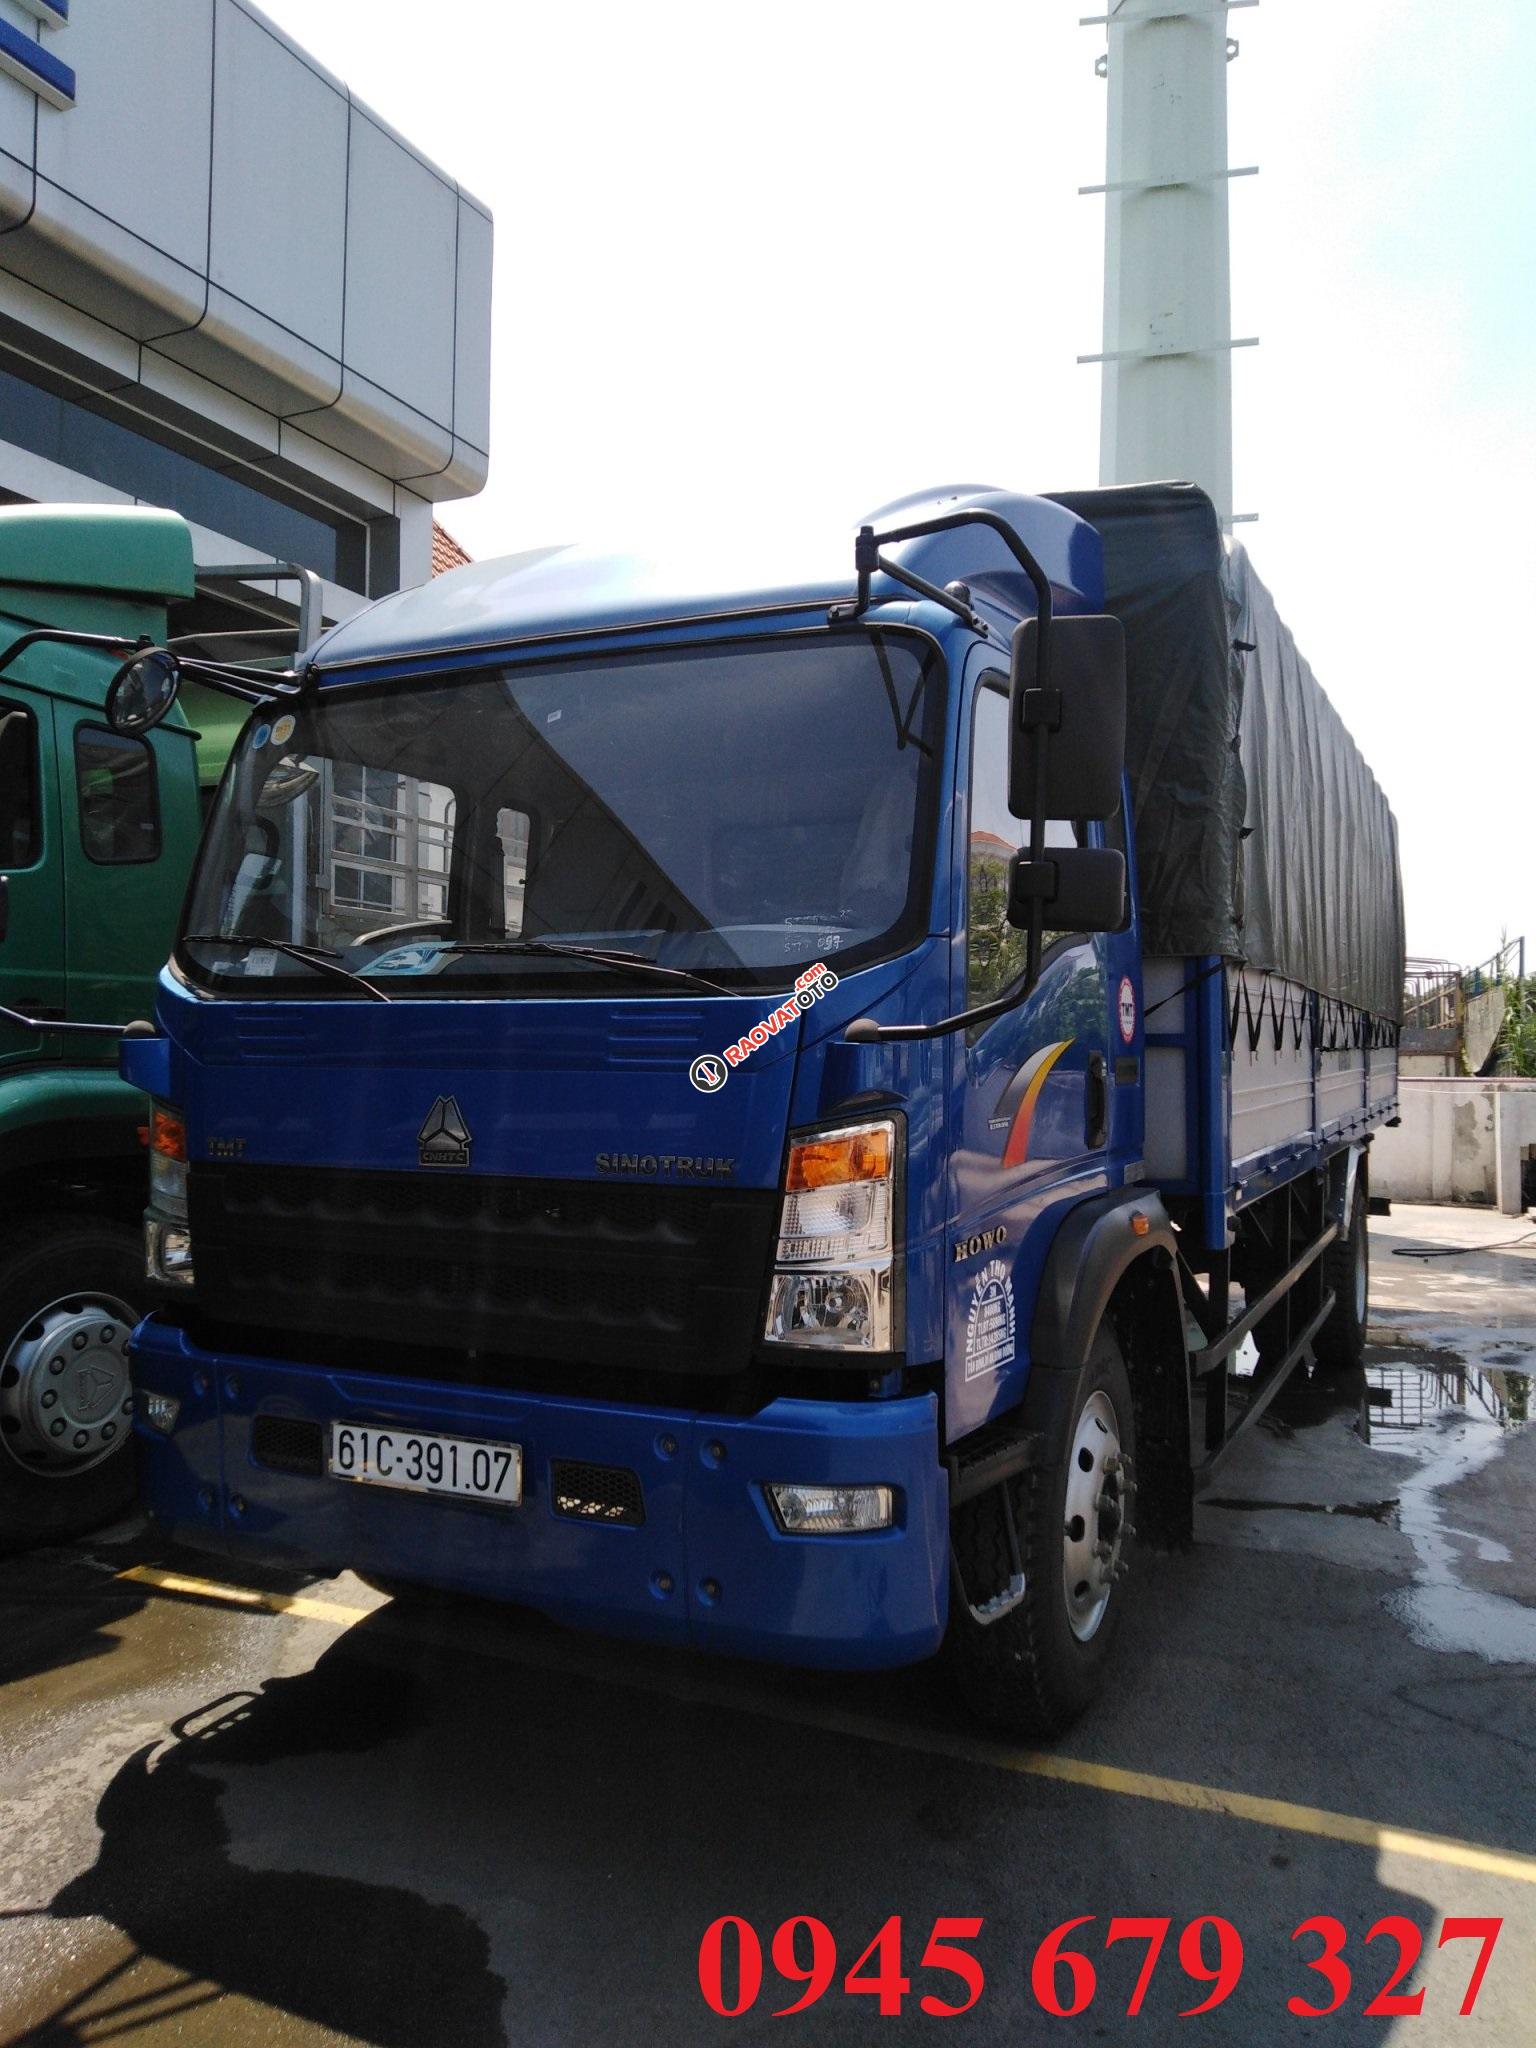 Thanh lý xe tải Howo 8t5 thùng 7m ga cơ, trả góp 190 triệu nhận xe-3